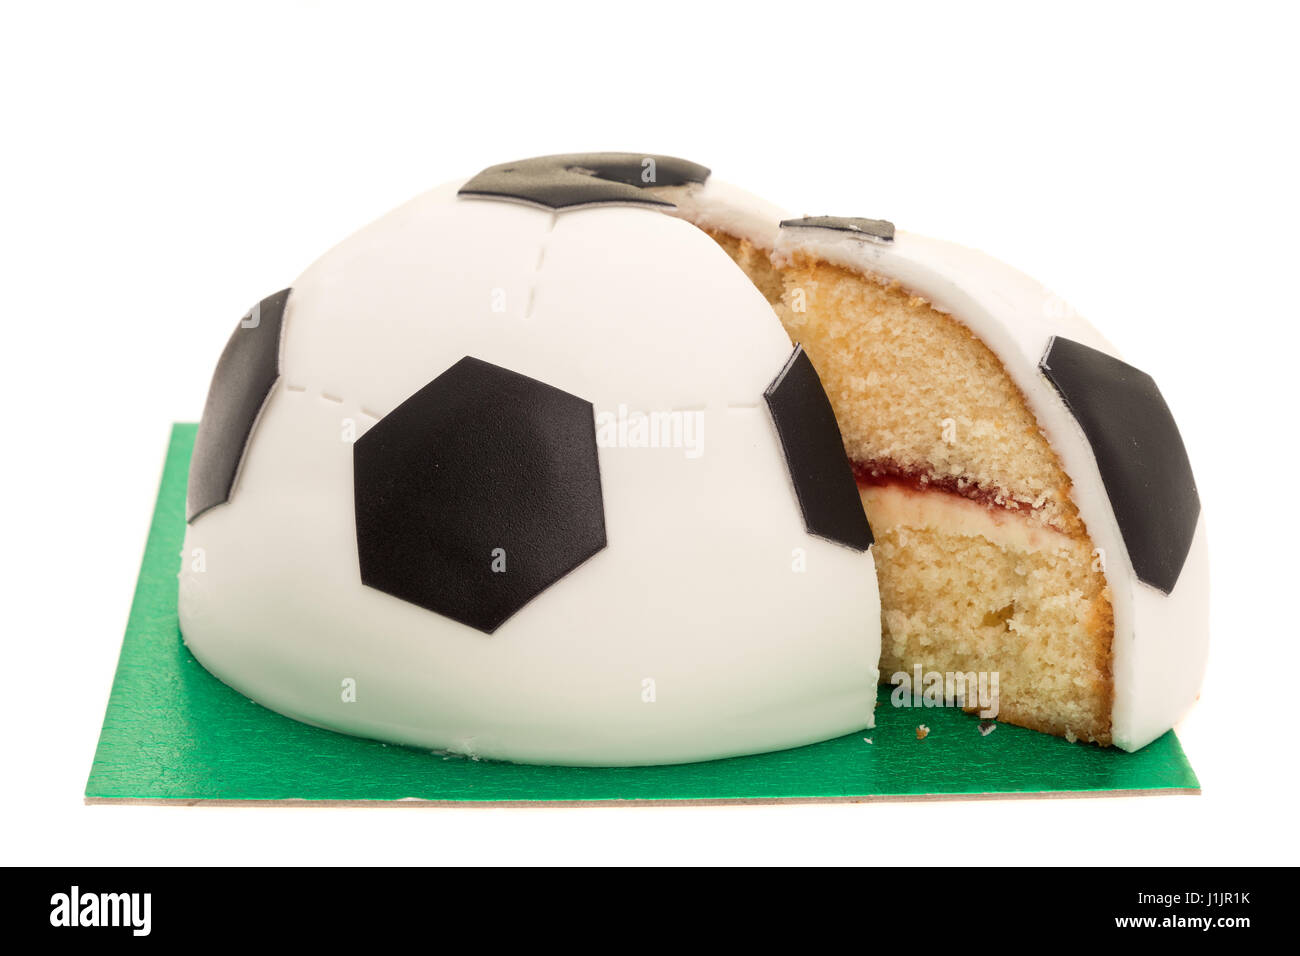 How to Make a Football Cake - CakeCentral.com